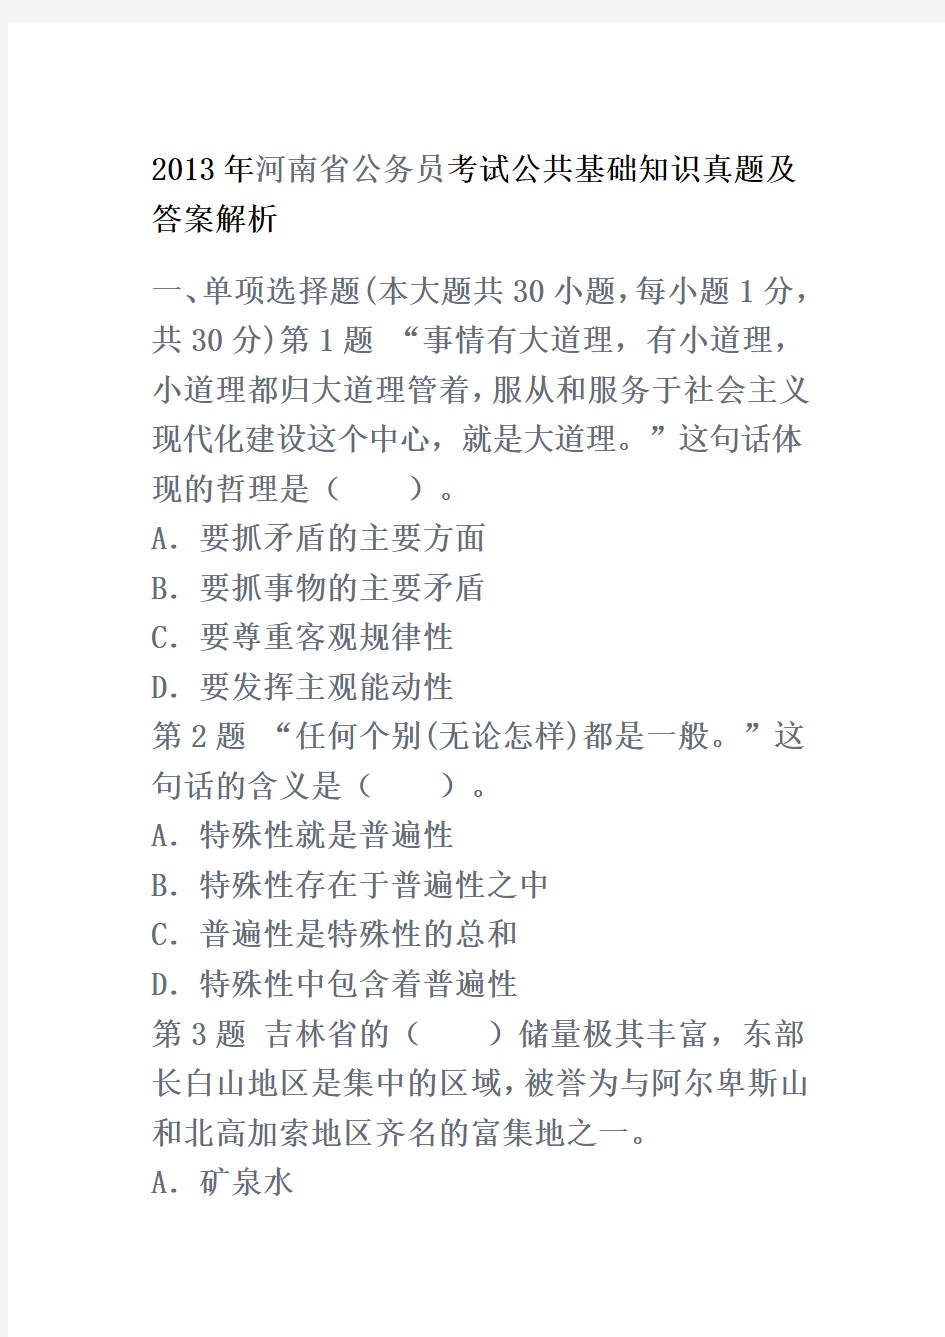 2013年河南省公务员考试公共基础知识真题